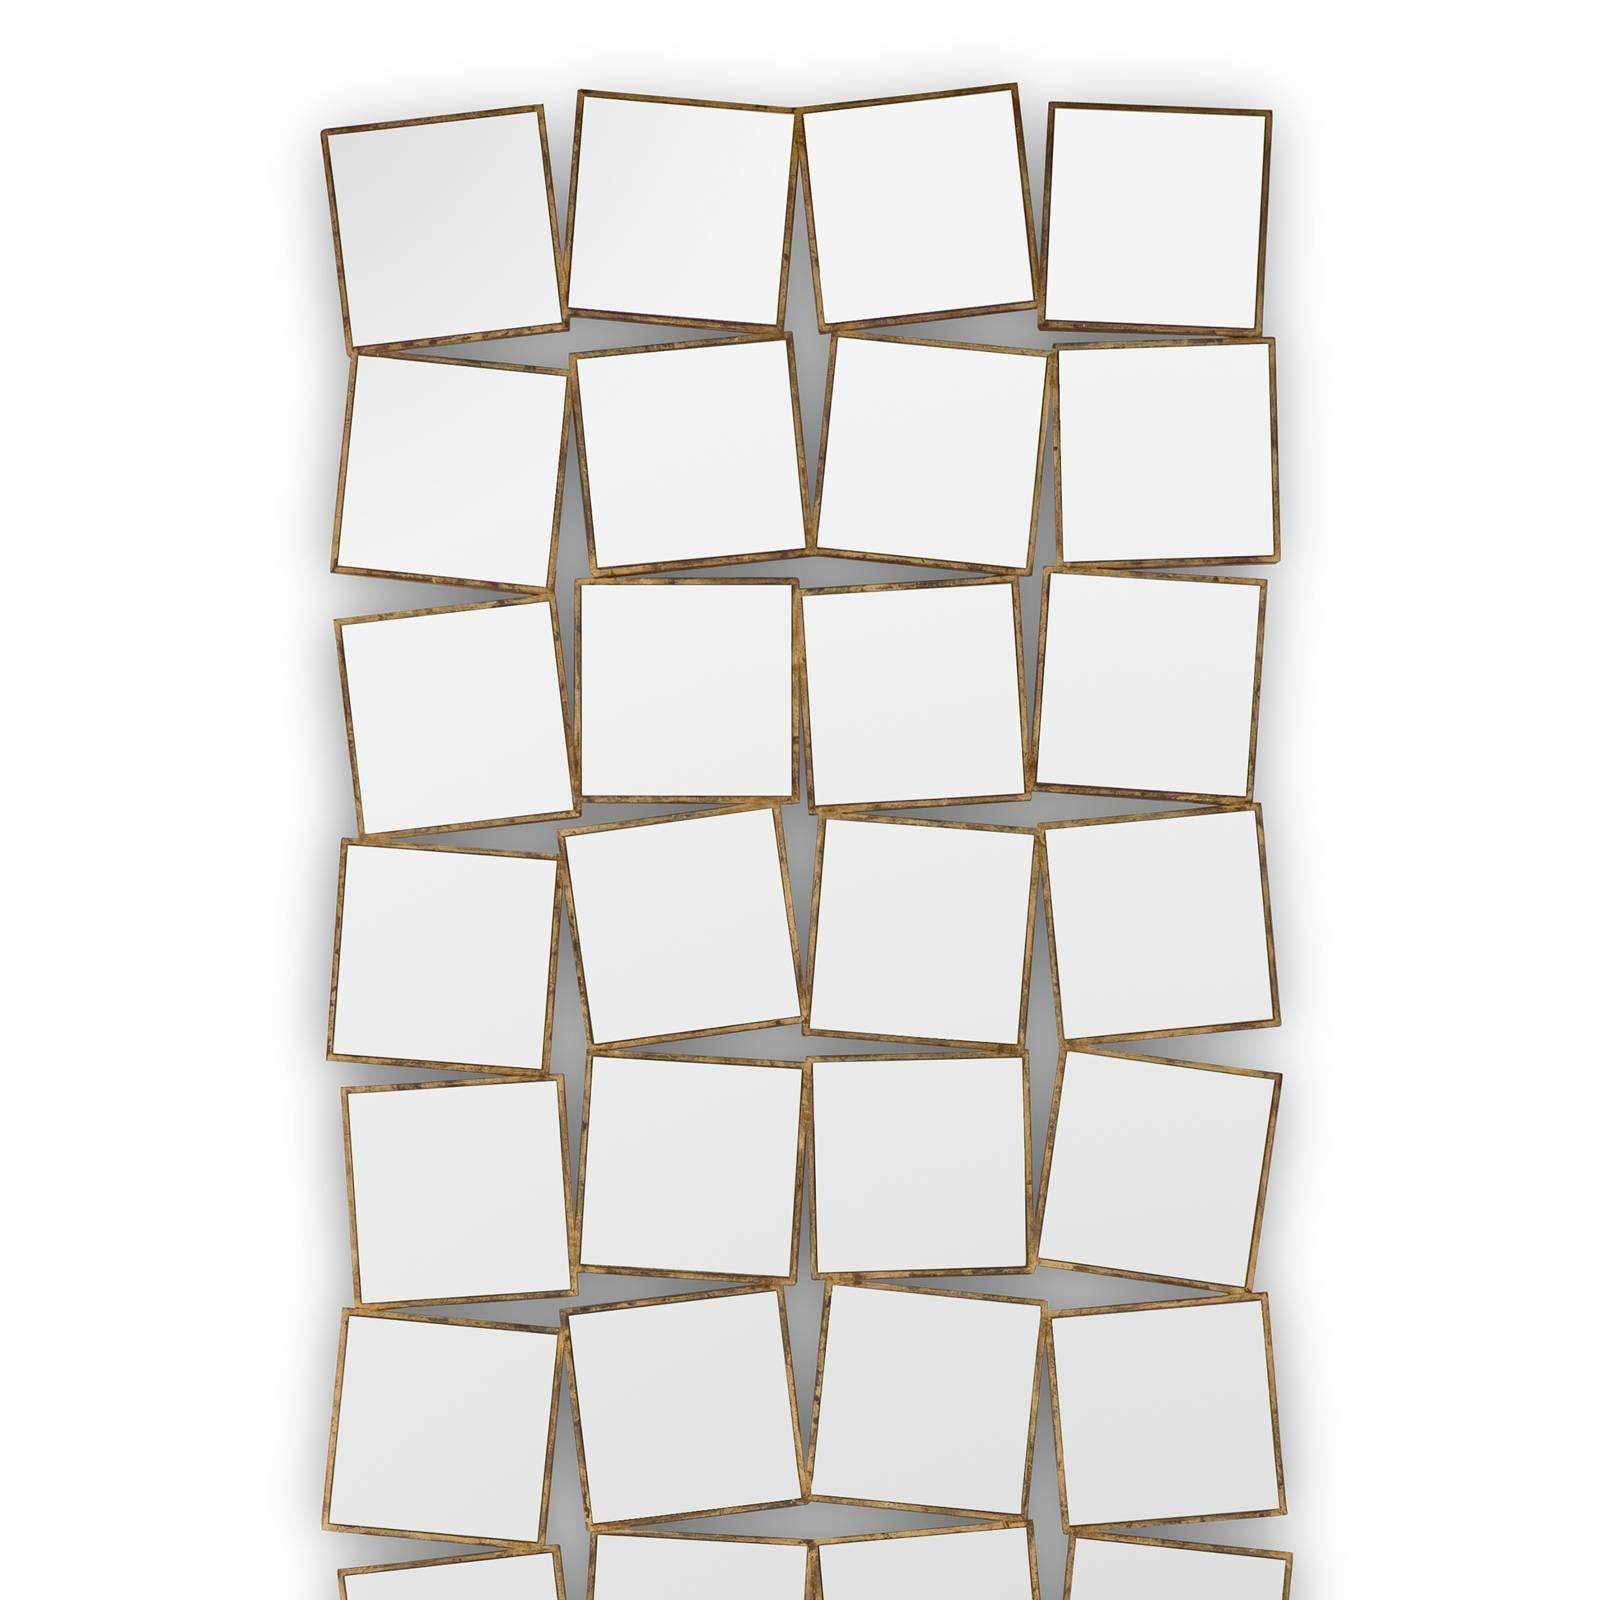 Spiegel 36. Quadrate mit Rahmen aus Massivholz,
handbemalt mit antiker Goldmalerei. Mit
36 geschliffenes Spiegelglas.

  